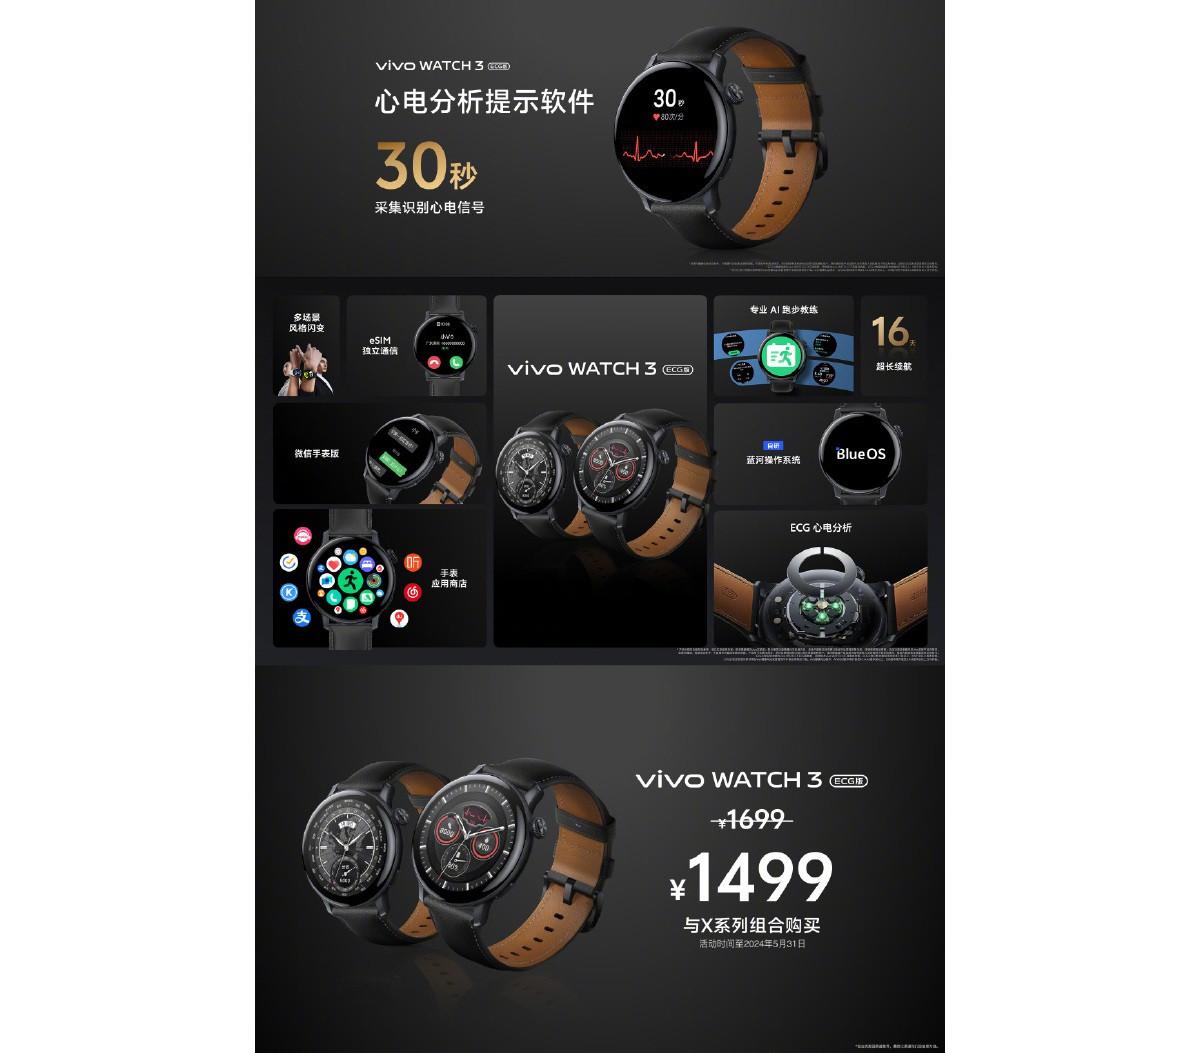 Vivo выпустила смарт-часы Watch 3 ECG